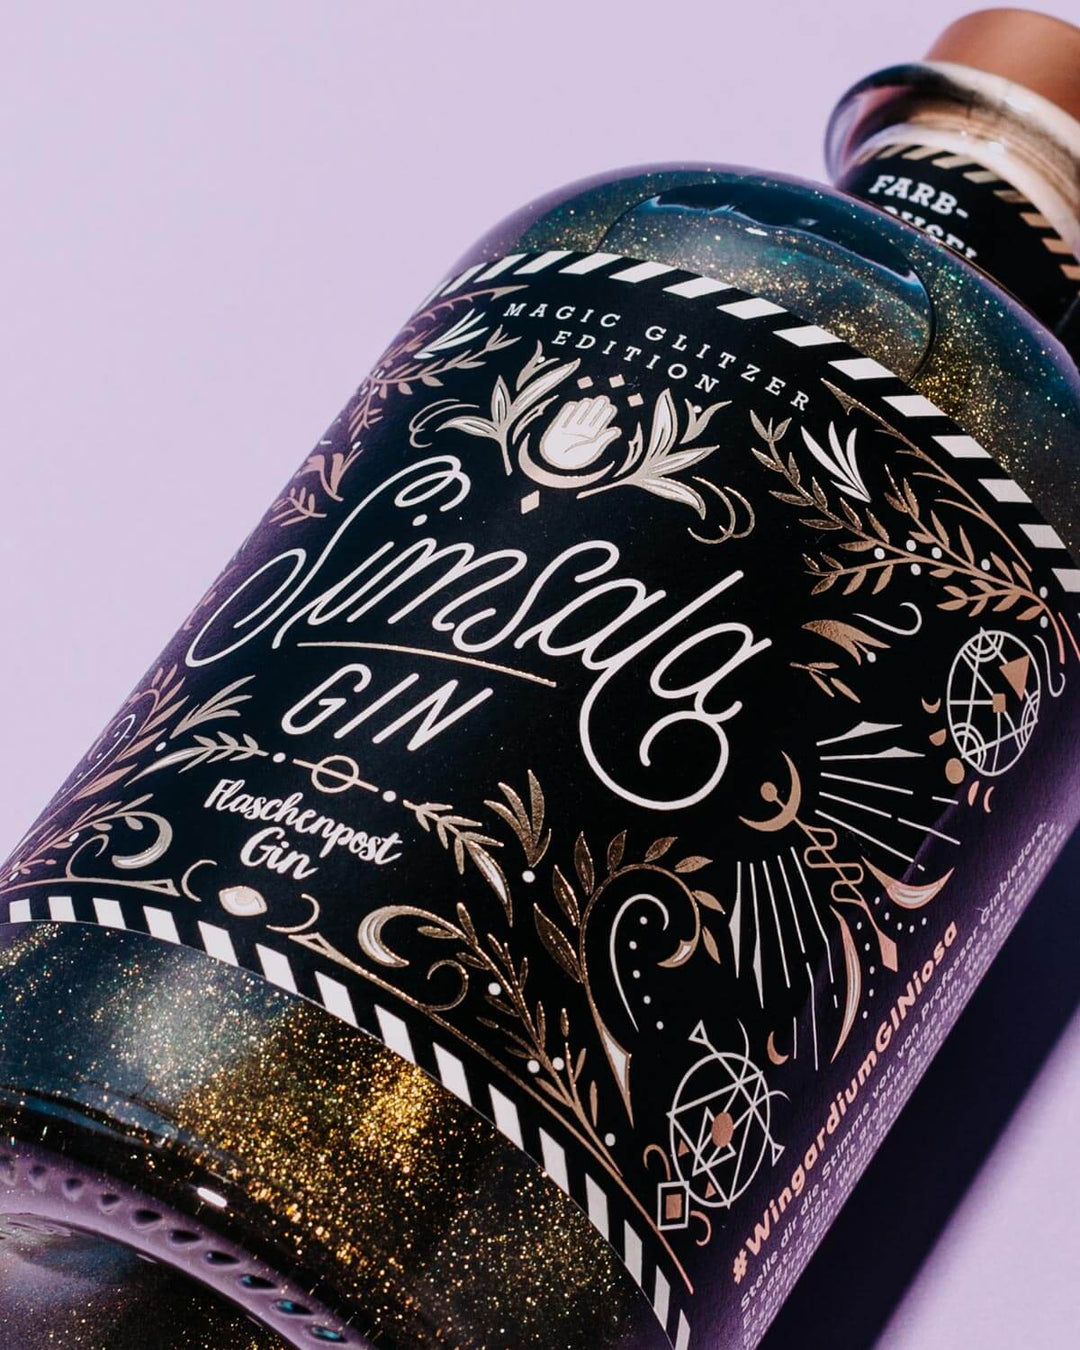 Das Etikett Simsala Gin von Flaschenpost Gin gleicht mit seinen goldenen Details auf schwarzem Hintergrund einem magischen Kunstwerk. Kreiert von dem Special Artist Nim Ben-Reuven aus New Yorck.